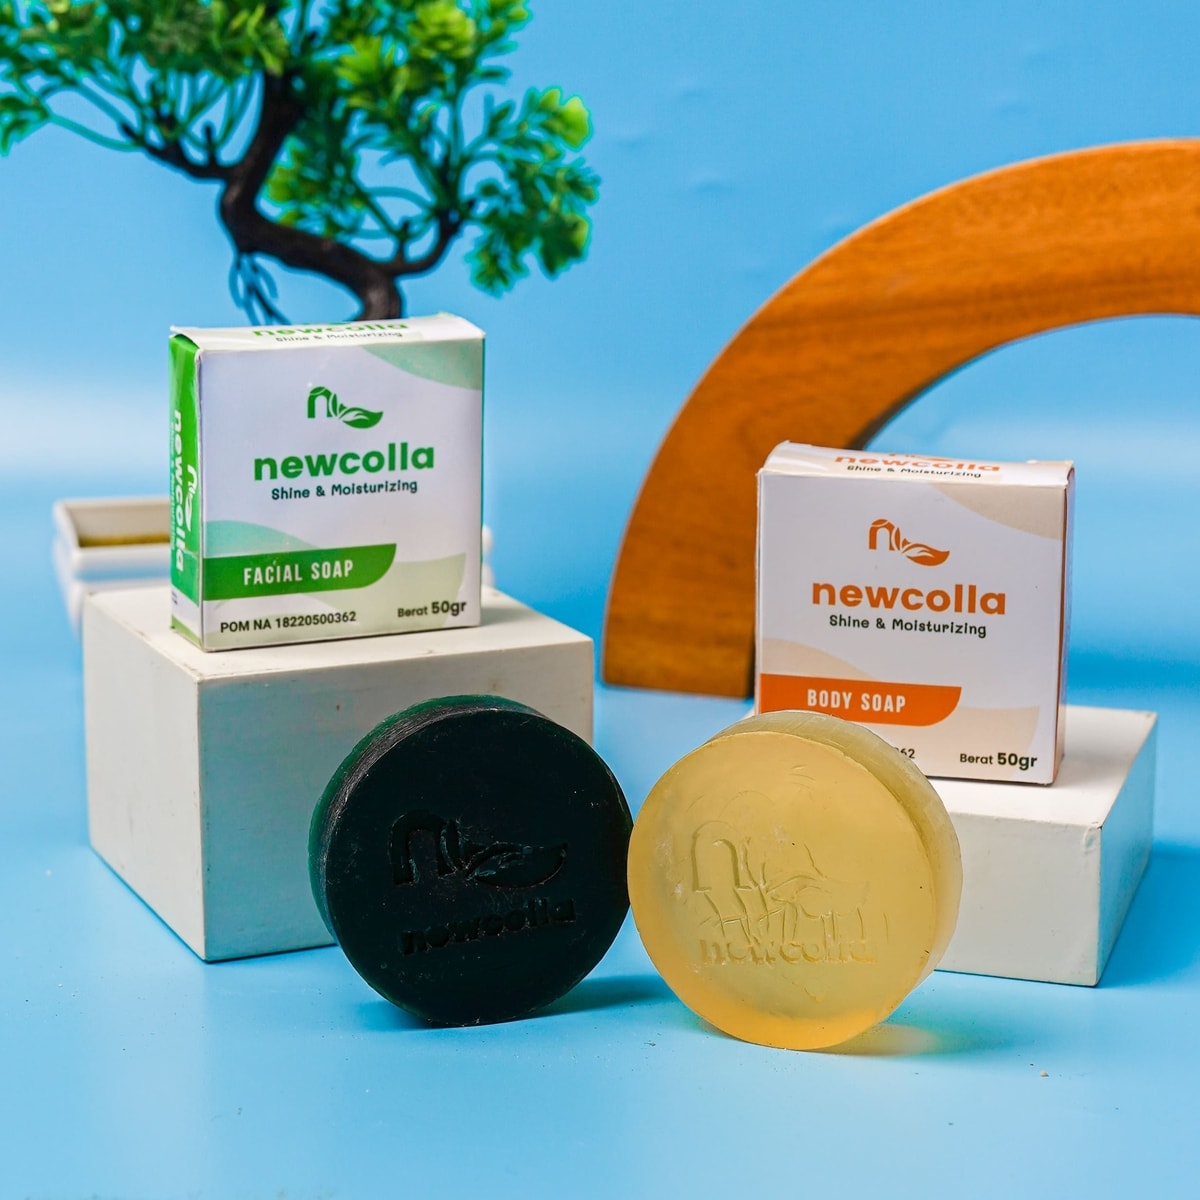 Sabun Newcolla mengandung minyak kelapa murni dan castor oil yang merangsang produksi kolagen.